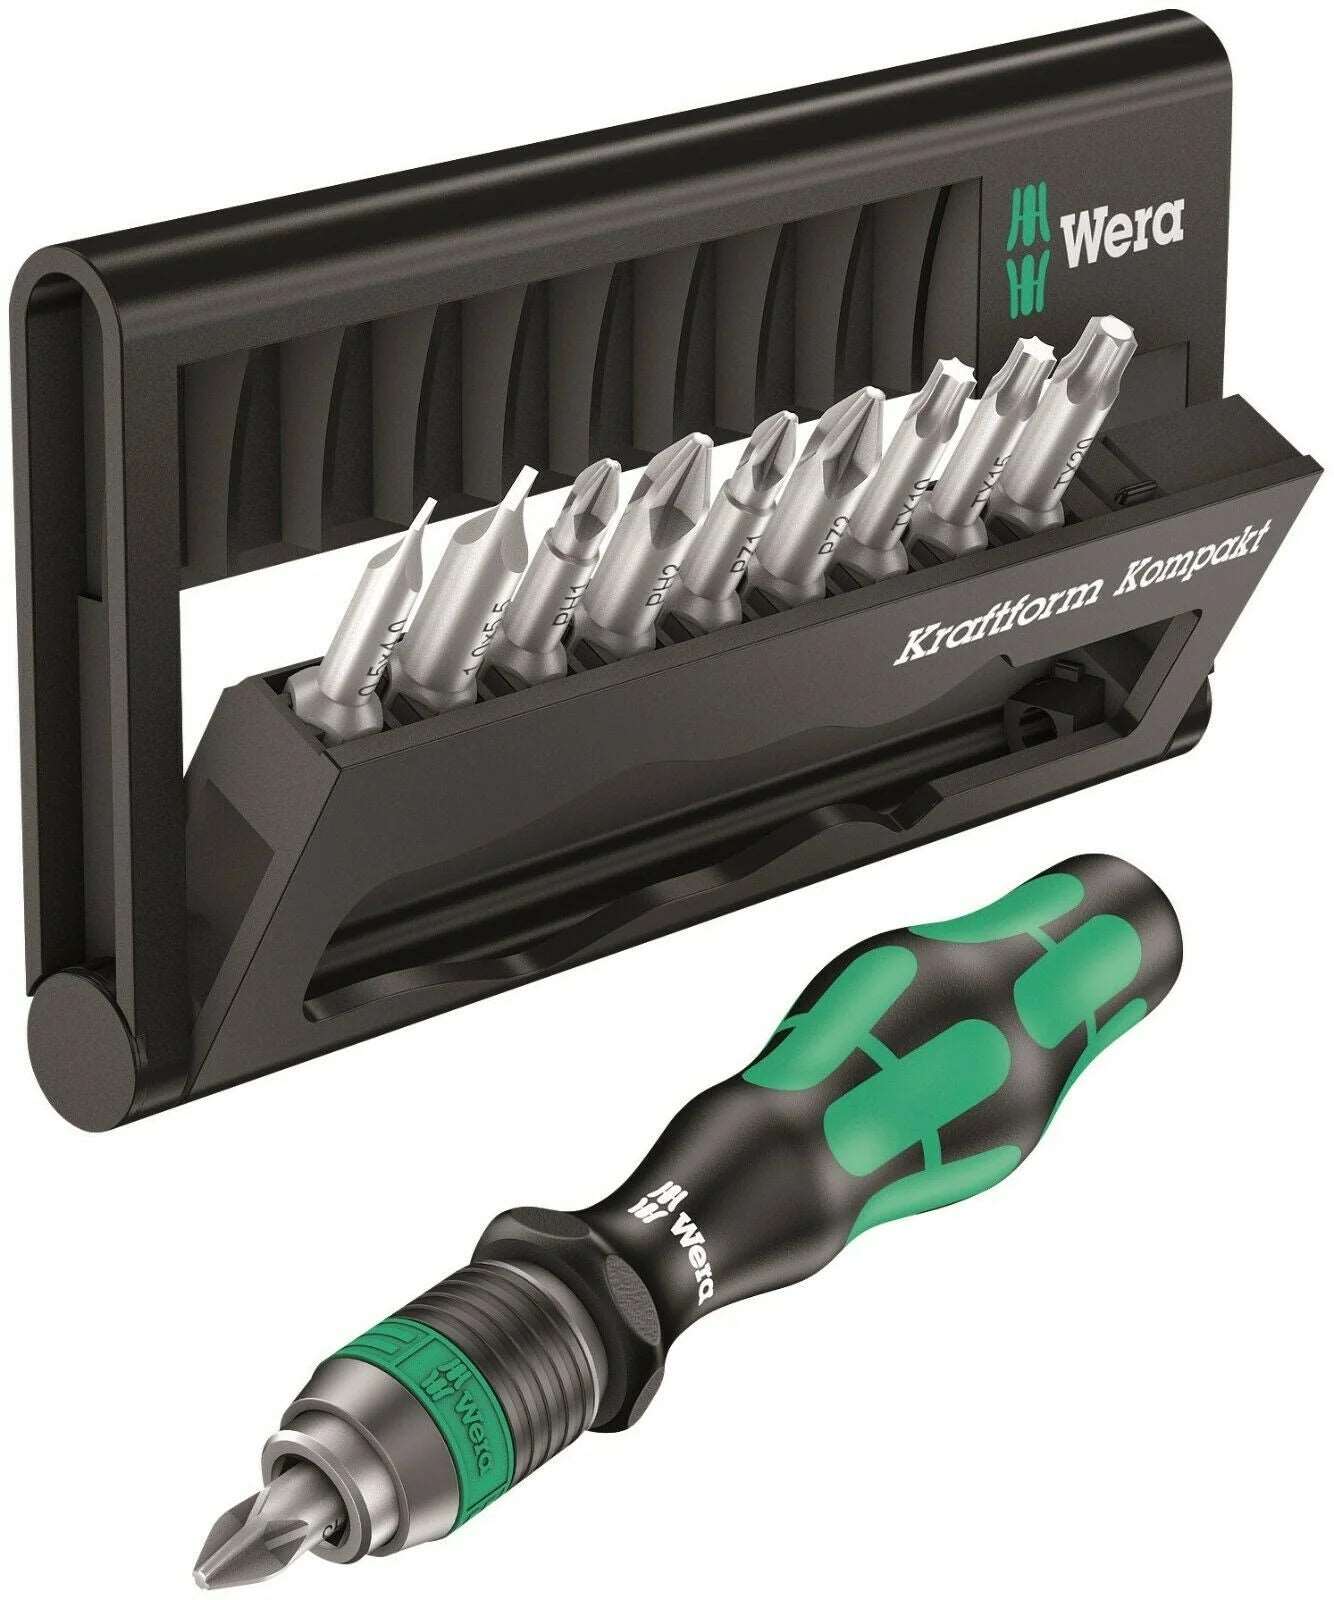 Wera Kraftform Kompakt 10, 10 pieces Power Tool Services